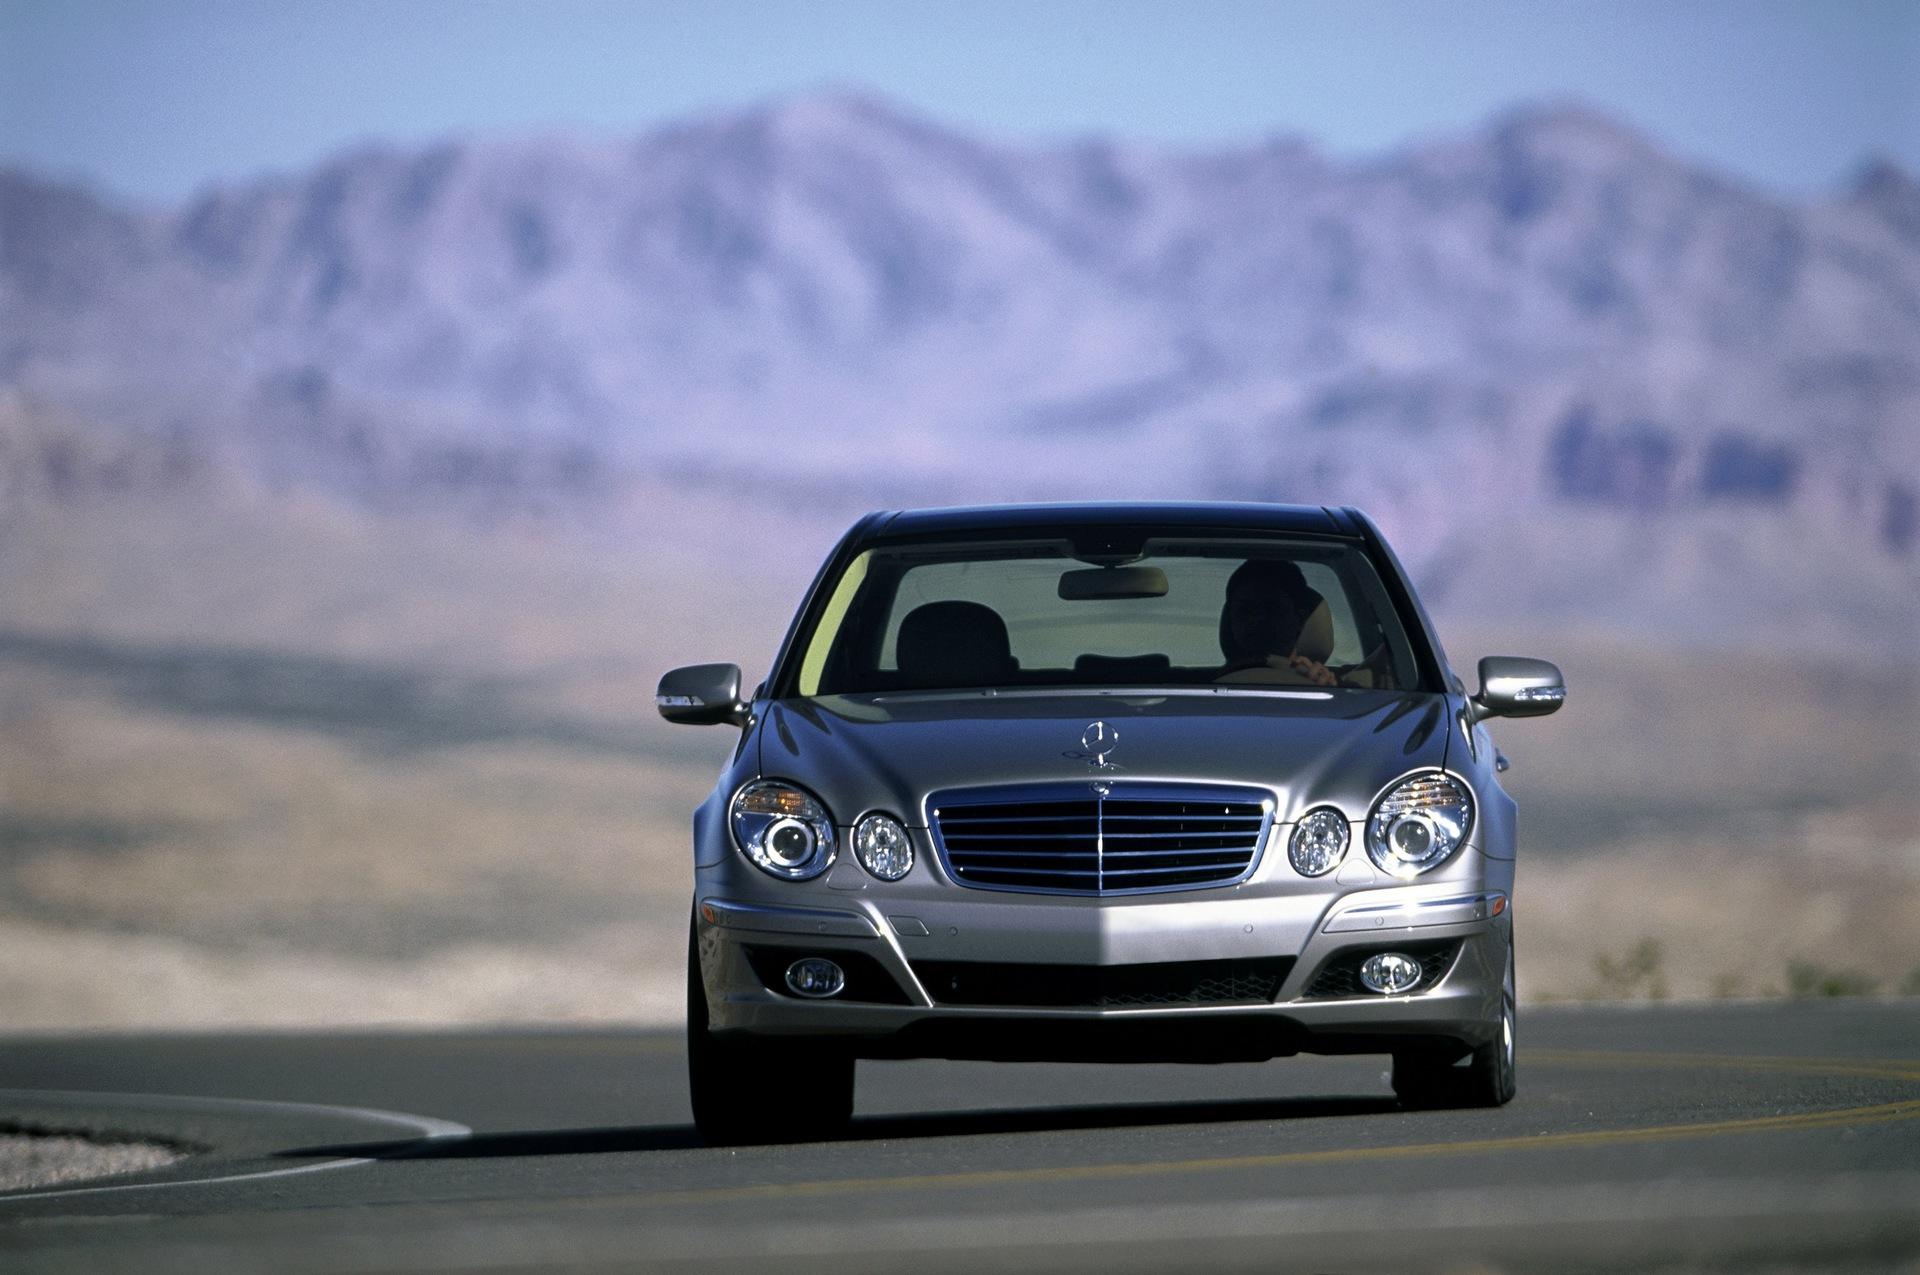 Скопировать мерседес. Mercedes-Benz e-class 2008. Мерседес е класс 2008. Mercedes-Benz w211. Мерседес Бенц е200.